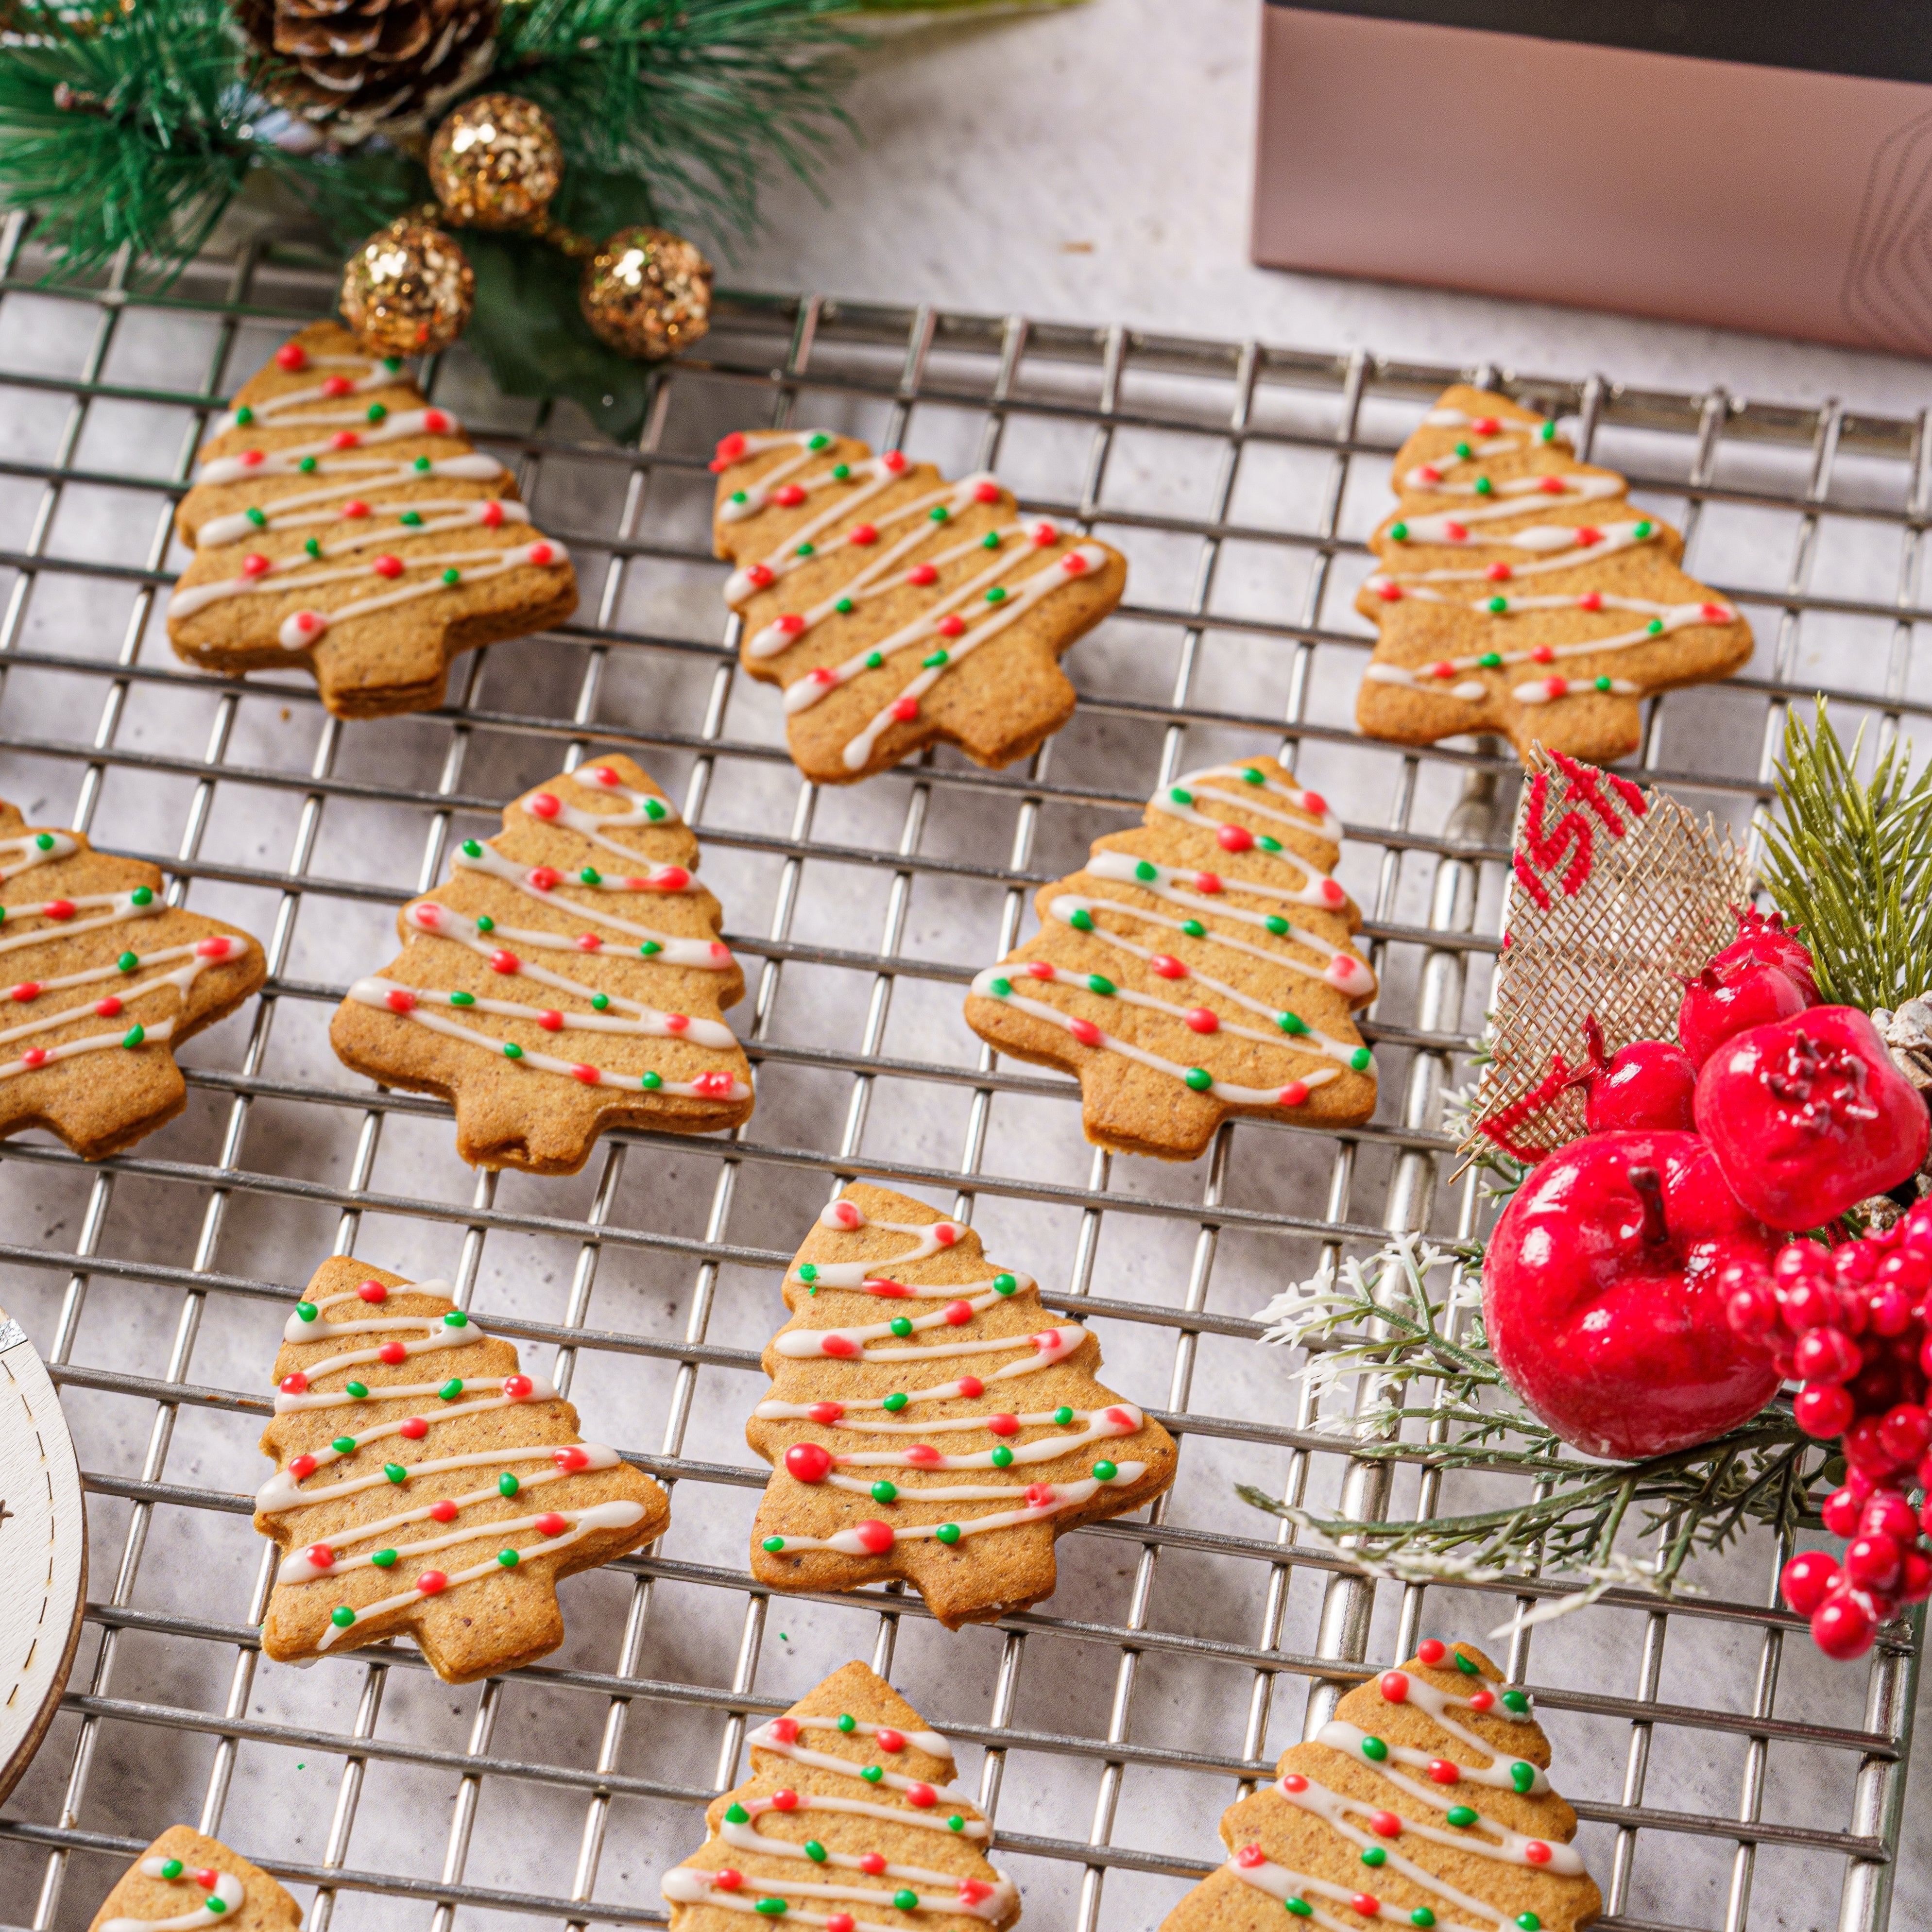 Gingerbread Cookies - Brownsalt Bakery